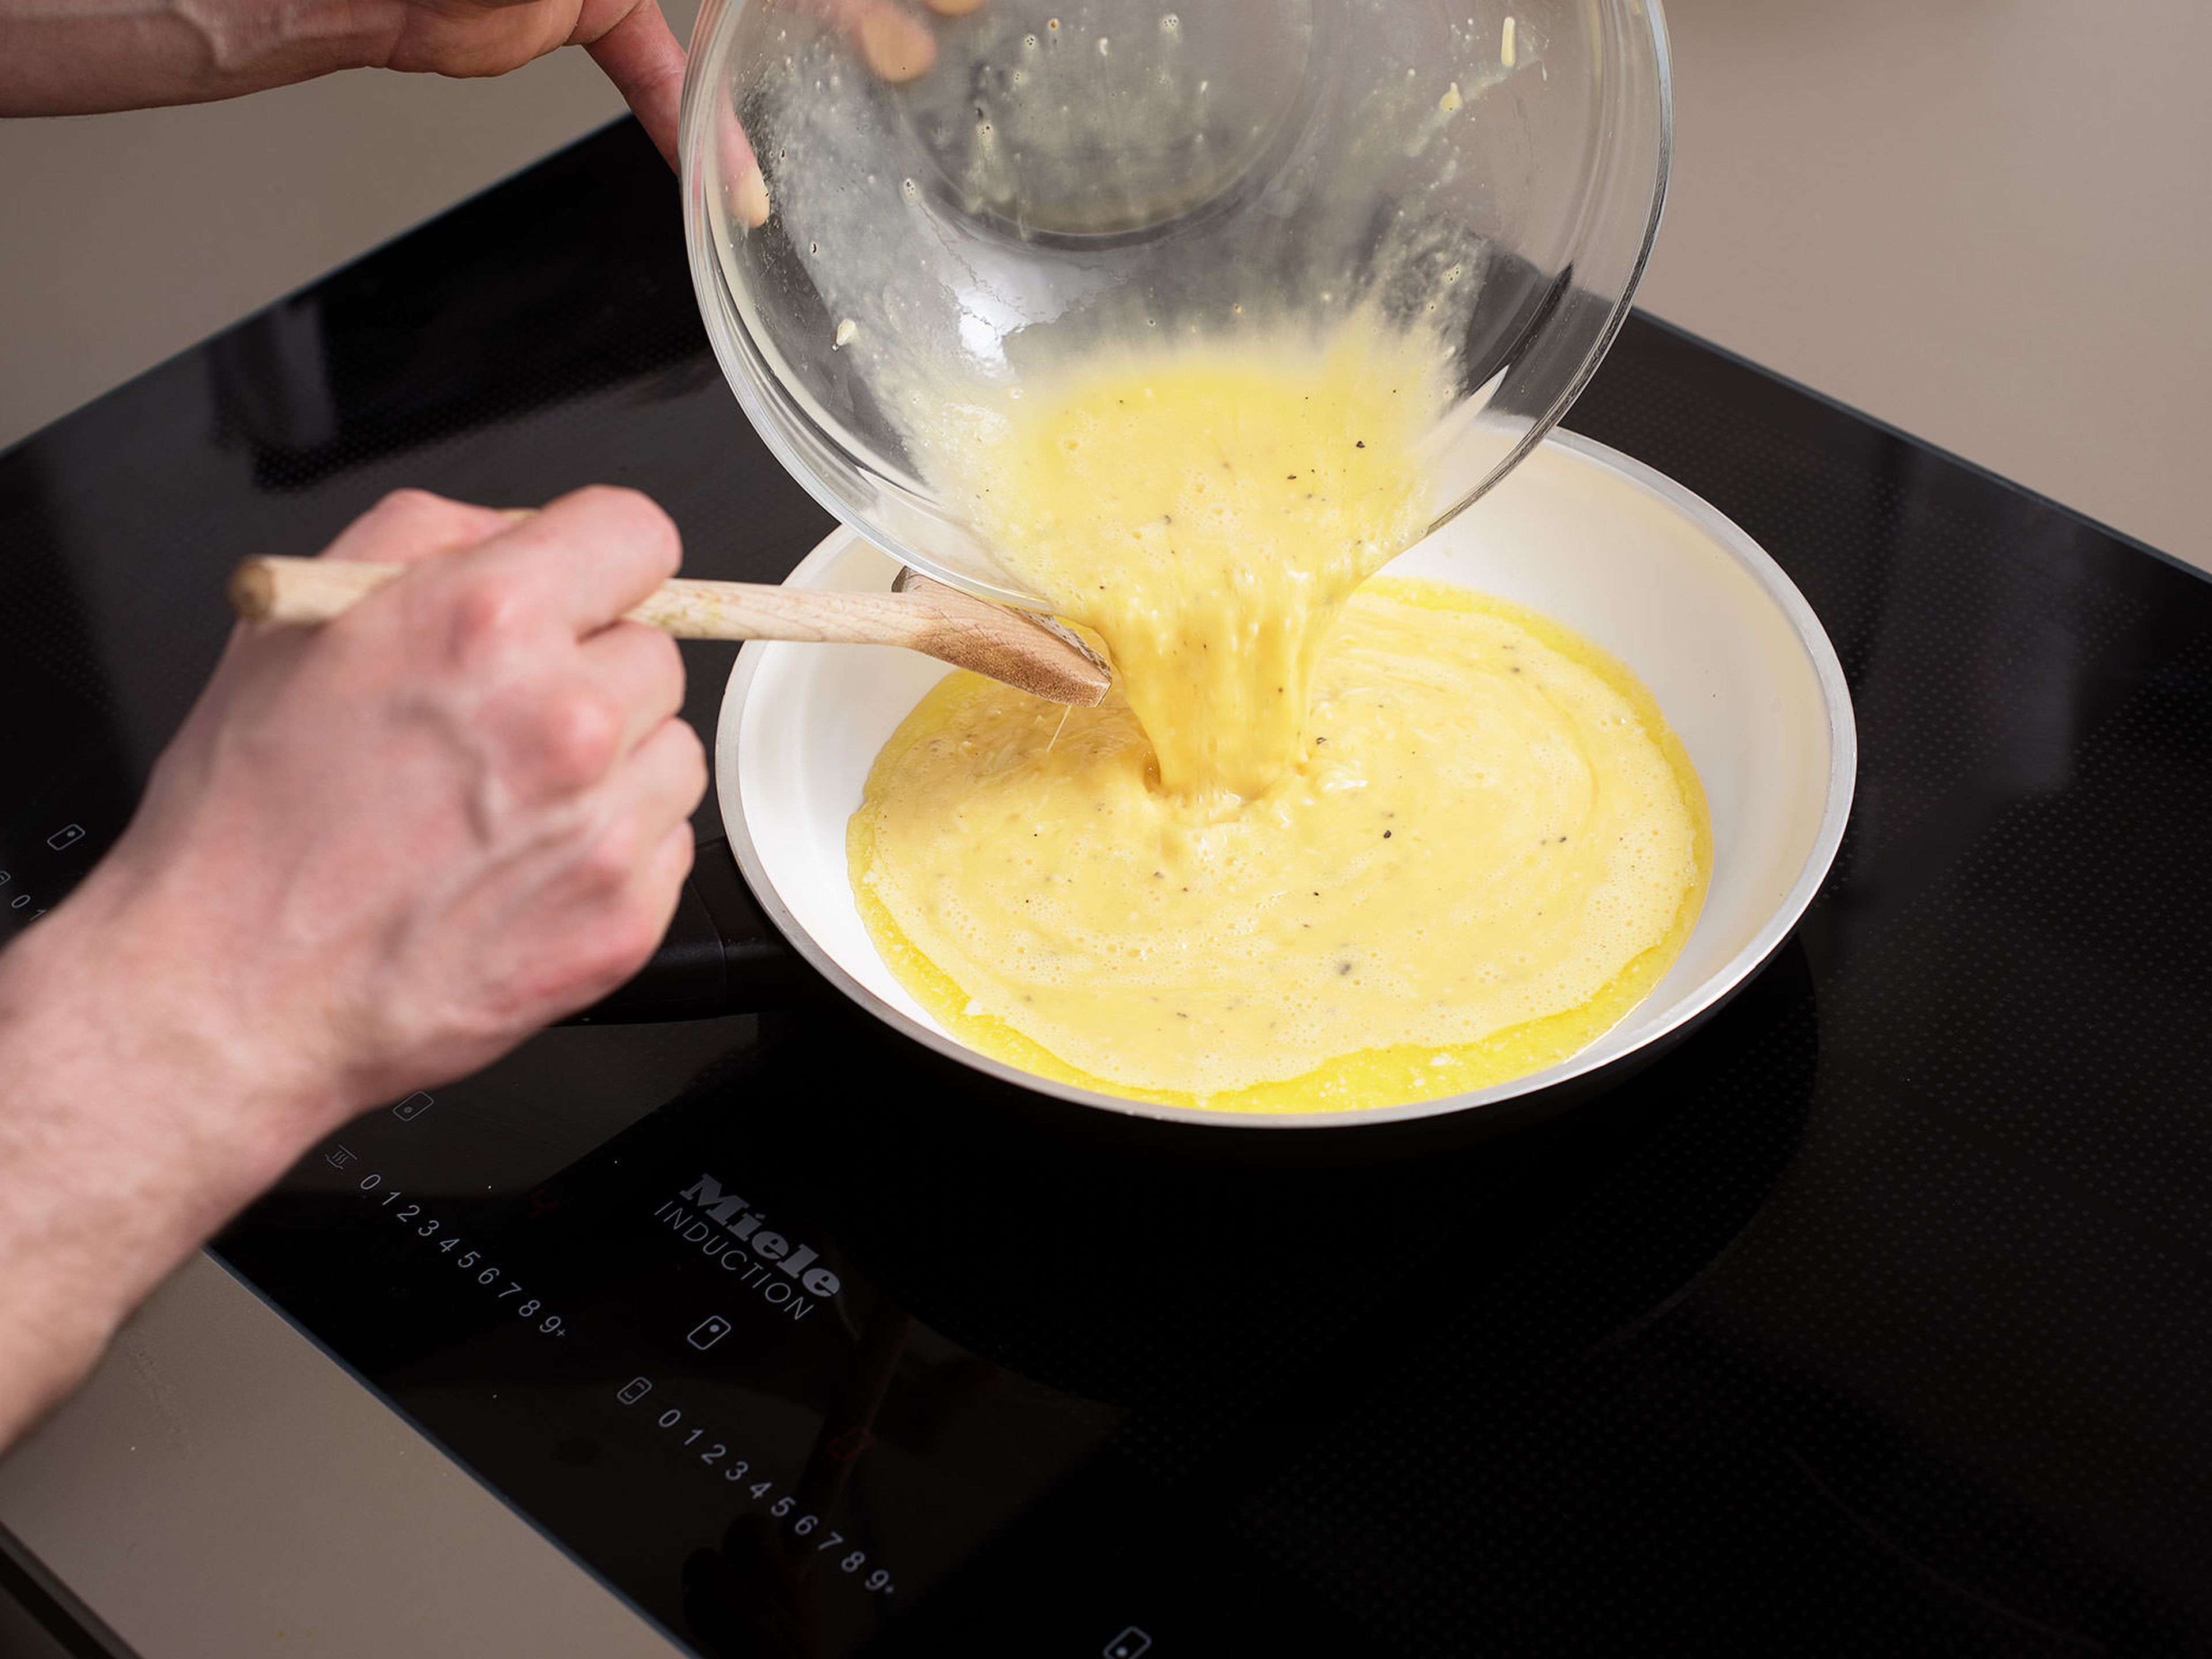 Butter in einer Pfanne über mittlerer Hitze schmelzen lassen. Die Ei-Mischung in die Pfanne geben und ca. 10 Min. braten. Mit einem Kochlöffel vorsichtig rühren, bis das Rührei seidig und cremig ist.